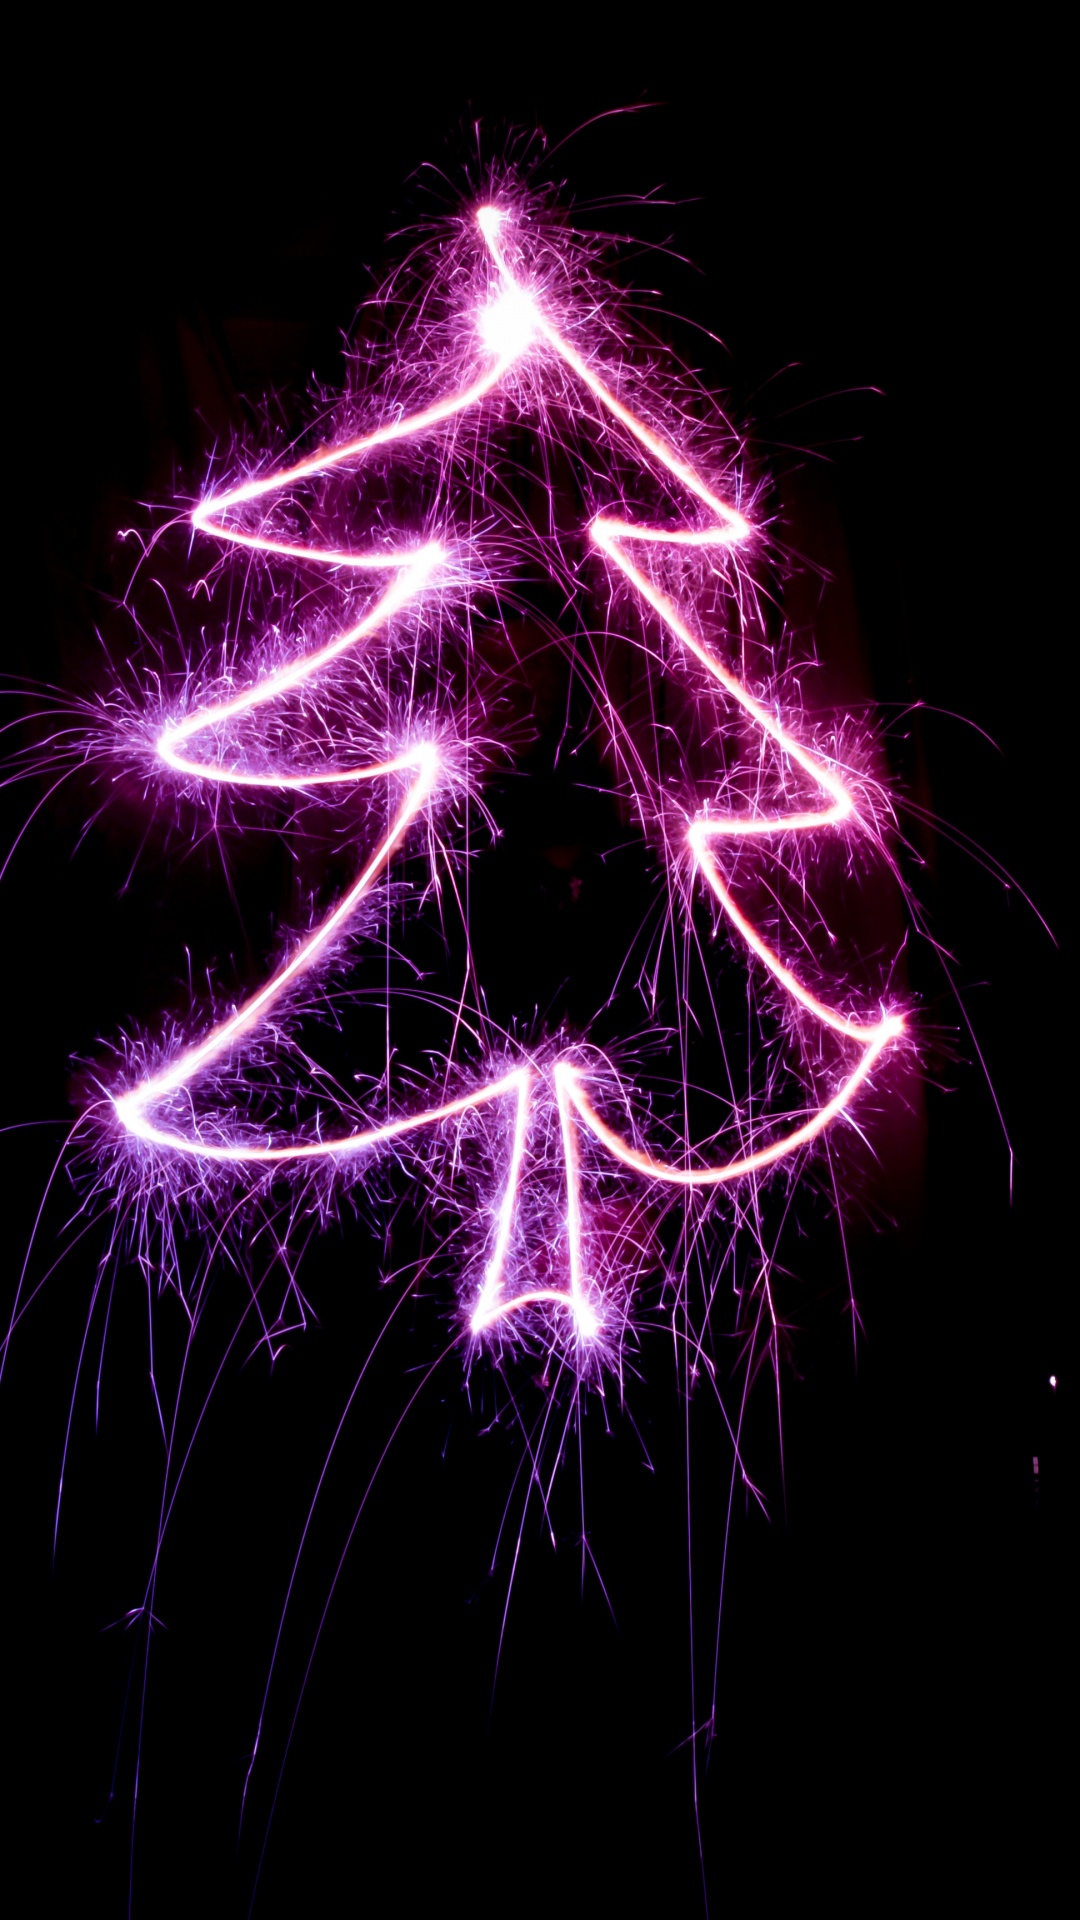 Weihnachten, Weihnachtsbaum, Purpur, Veilchen, Licht. Wallpaper in 1080x1920 Resolution